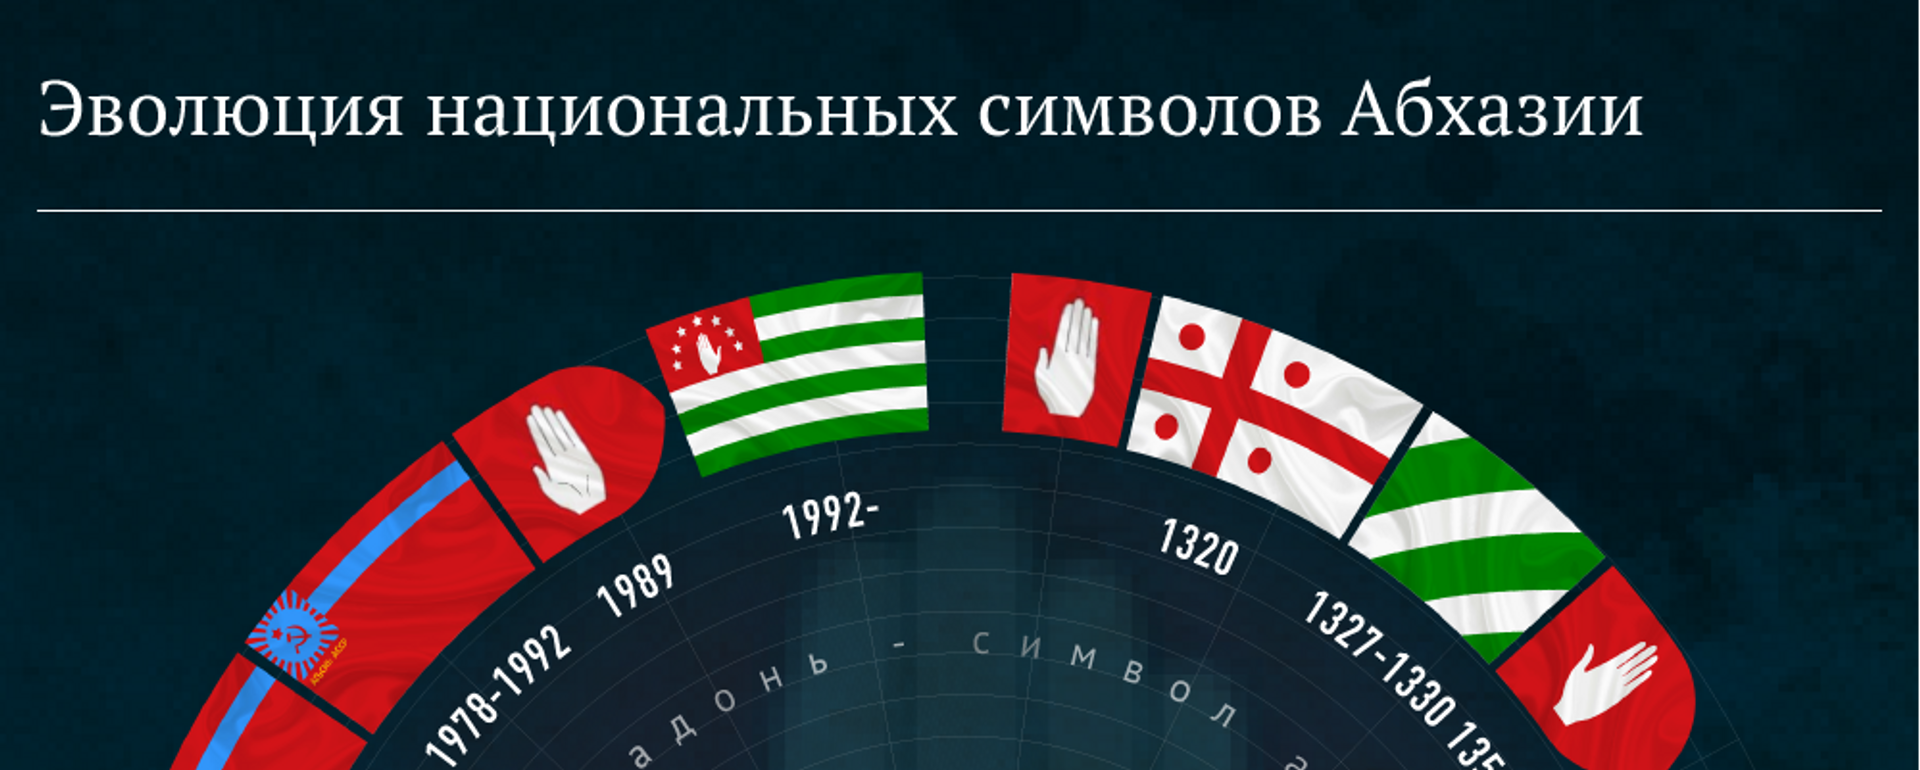 Эволюция национальных символов Абхазии - Sputnik Абхазия, 1920, 23.07.2019